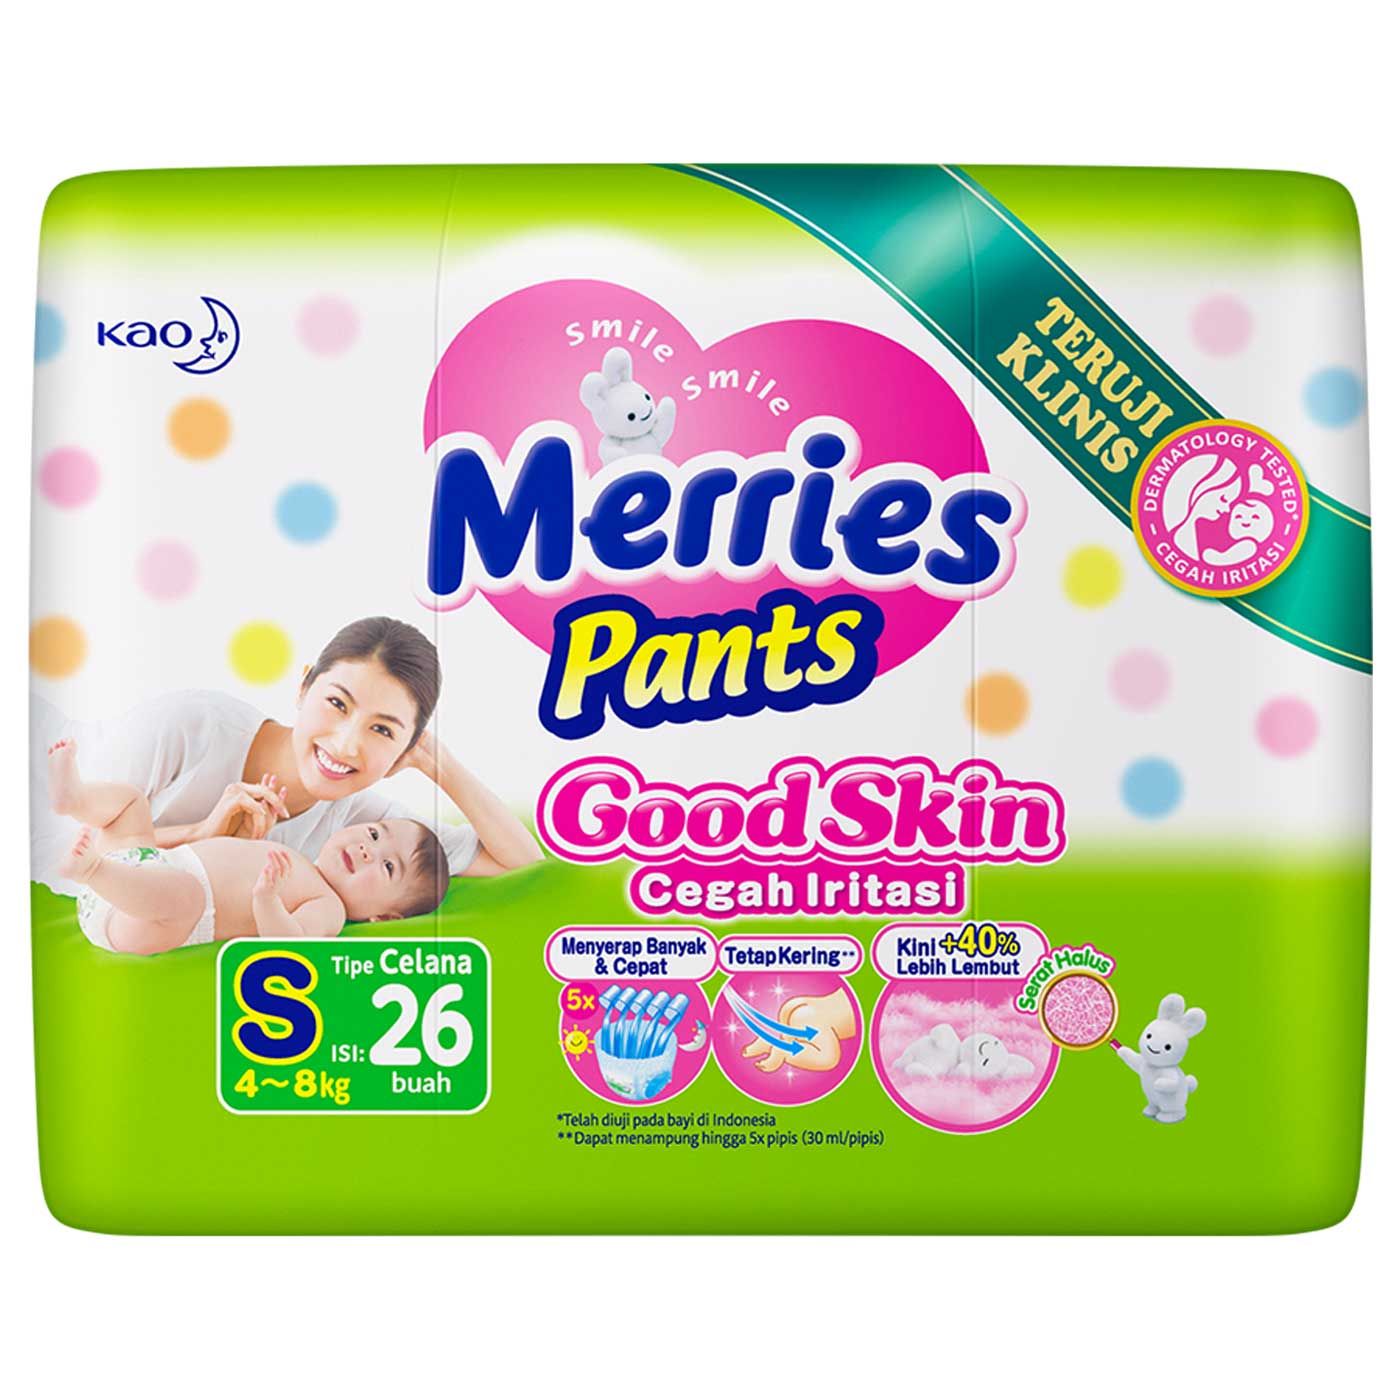 Merries Pants Good Skin S 26'S - 4